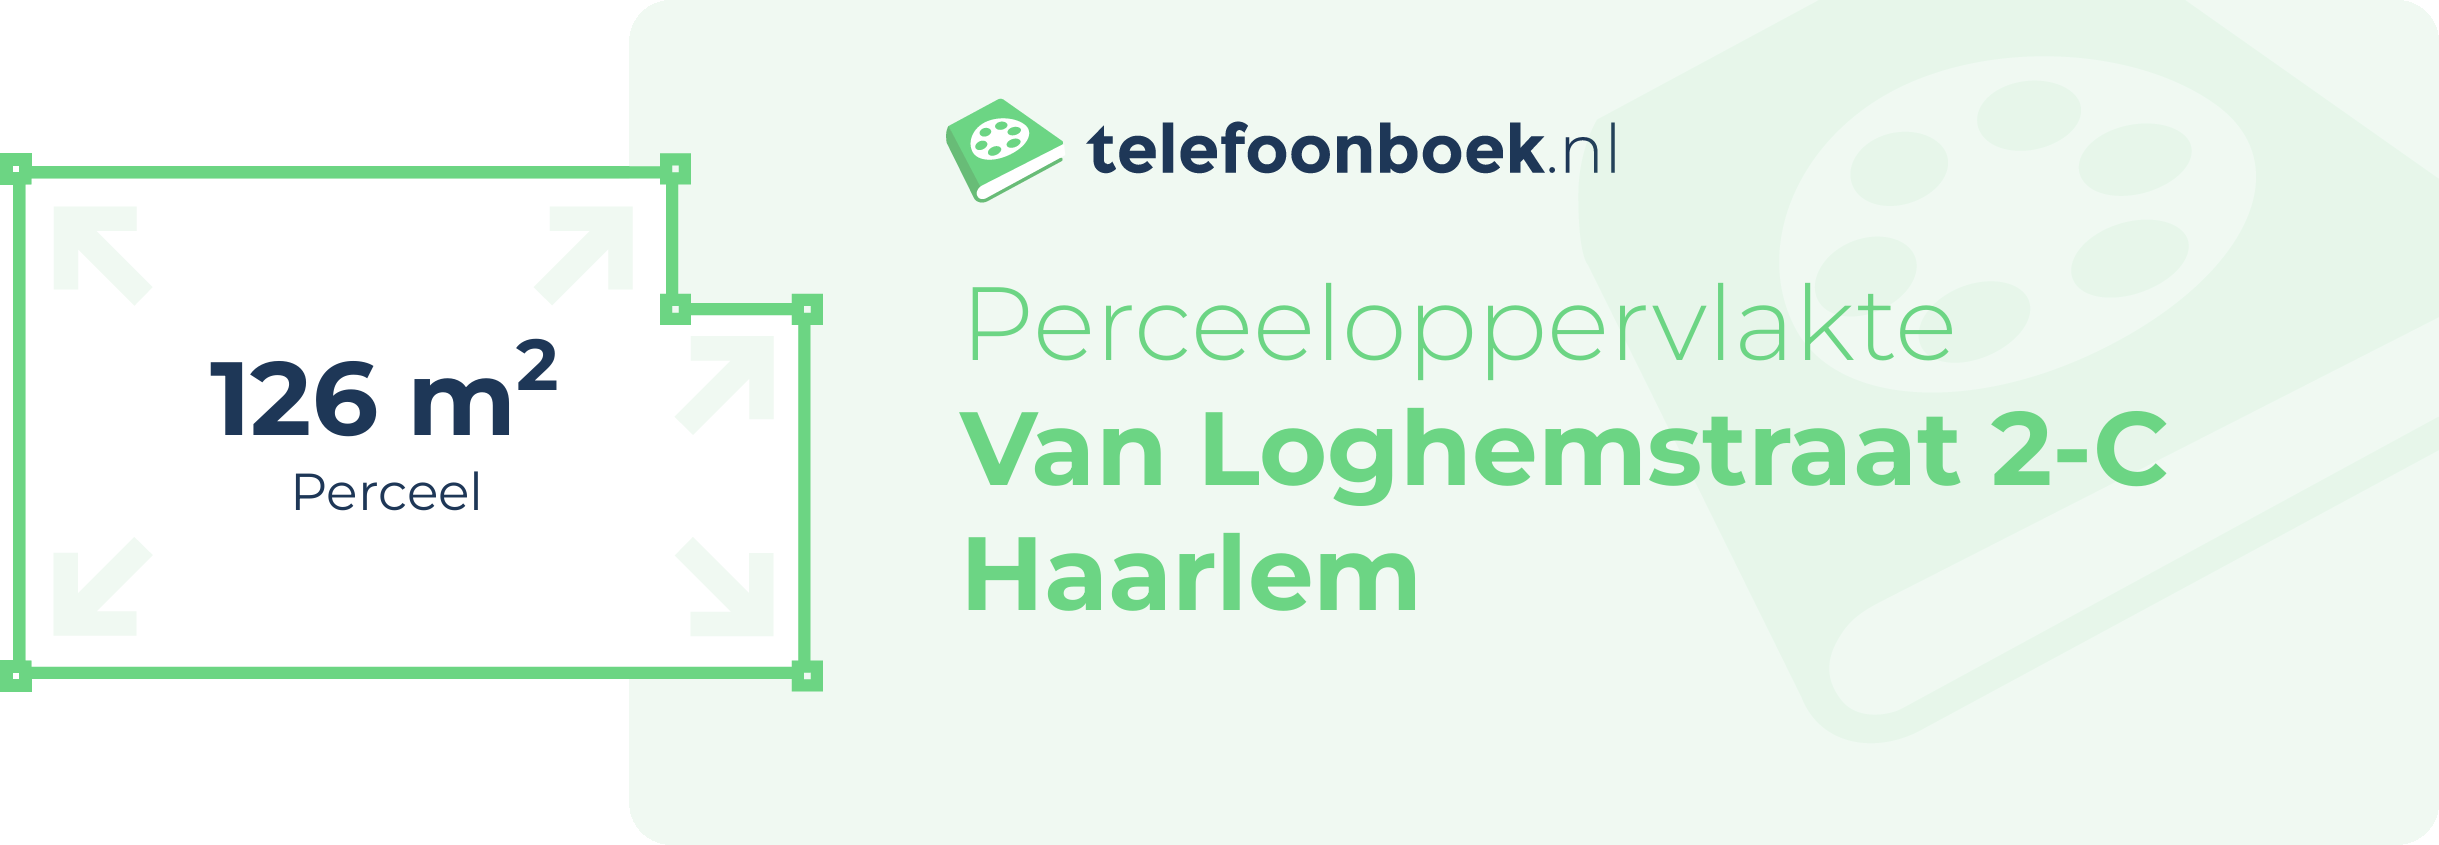 Perceeloppervlakte Van Loghemstraat 2-C Haarlem